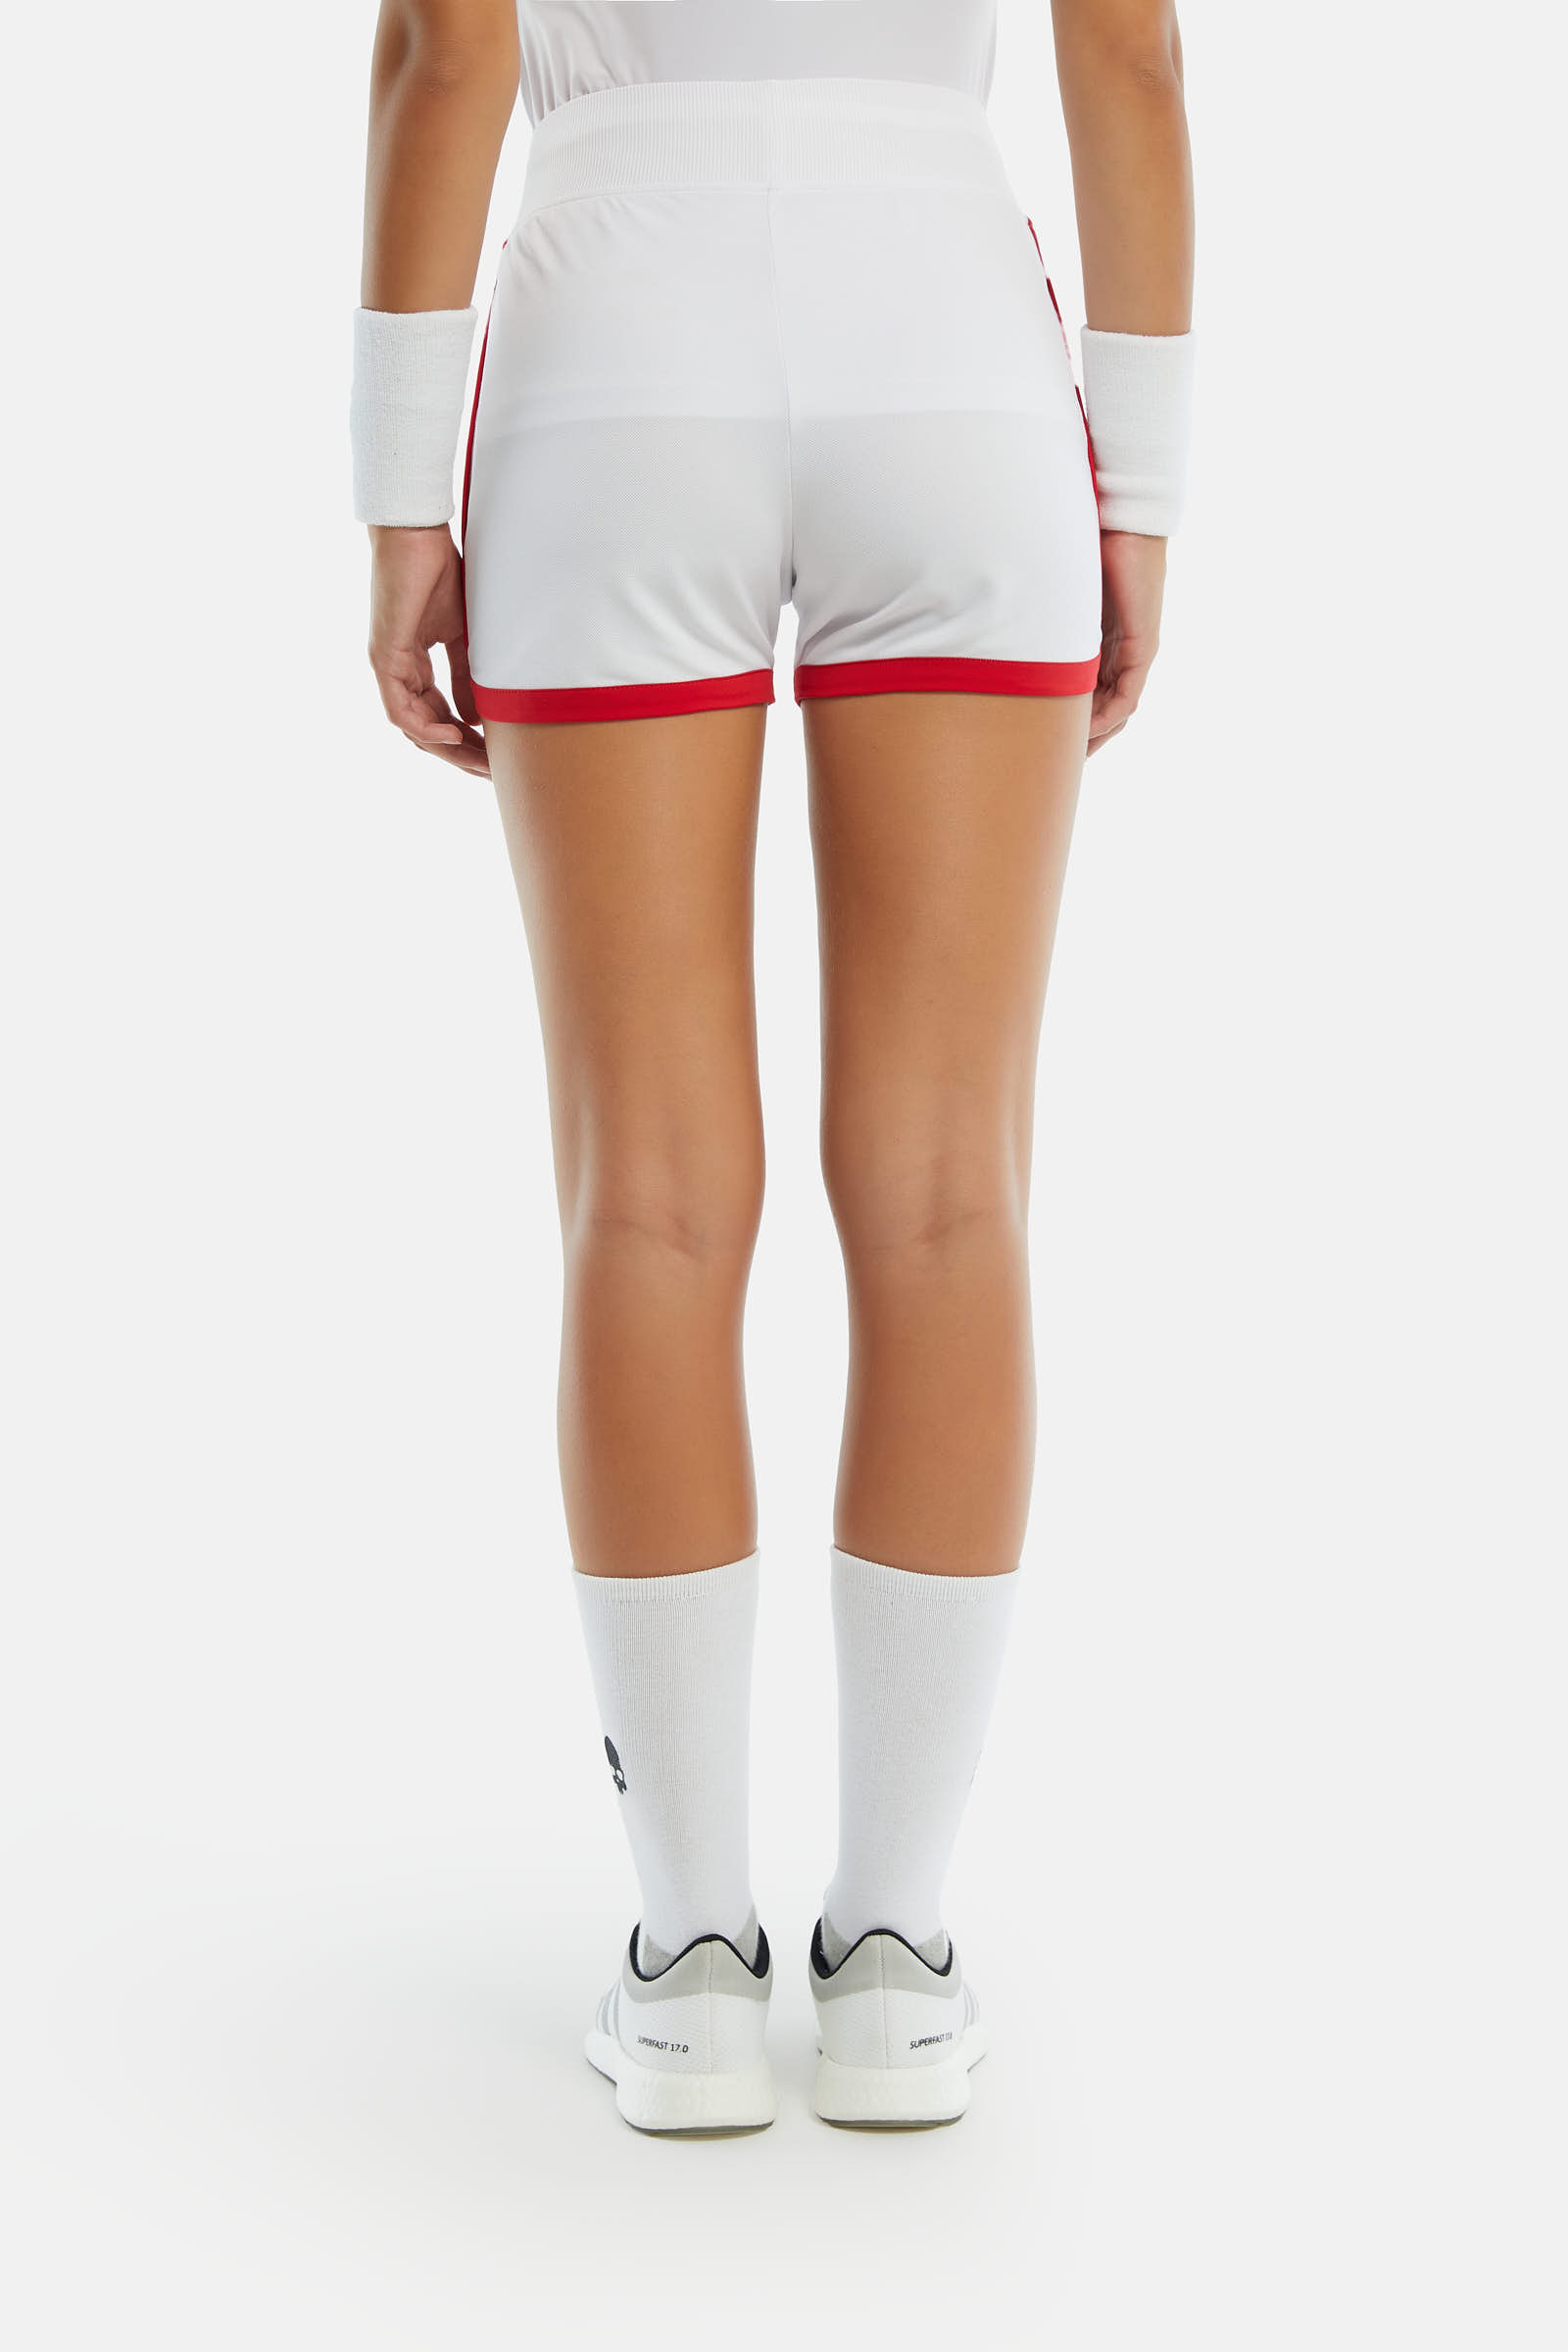 TECH SHORTS - WHITE,RED - Hydrogen - Luxury Sportwear